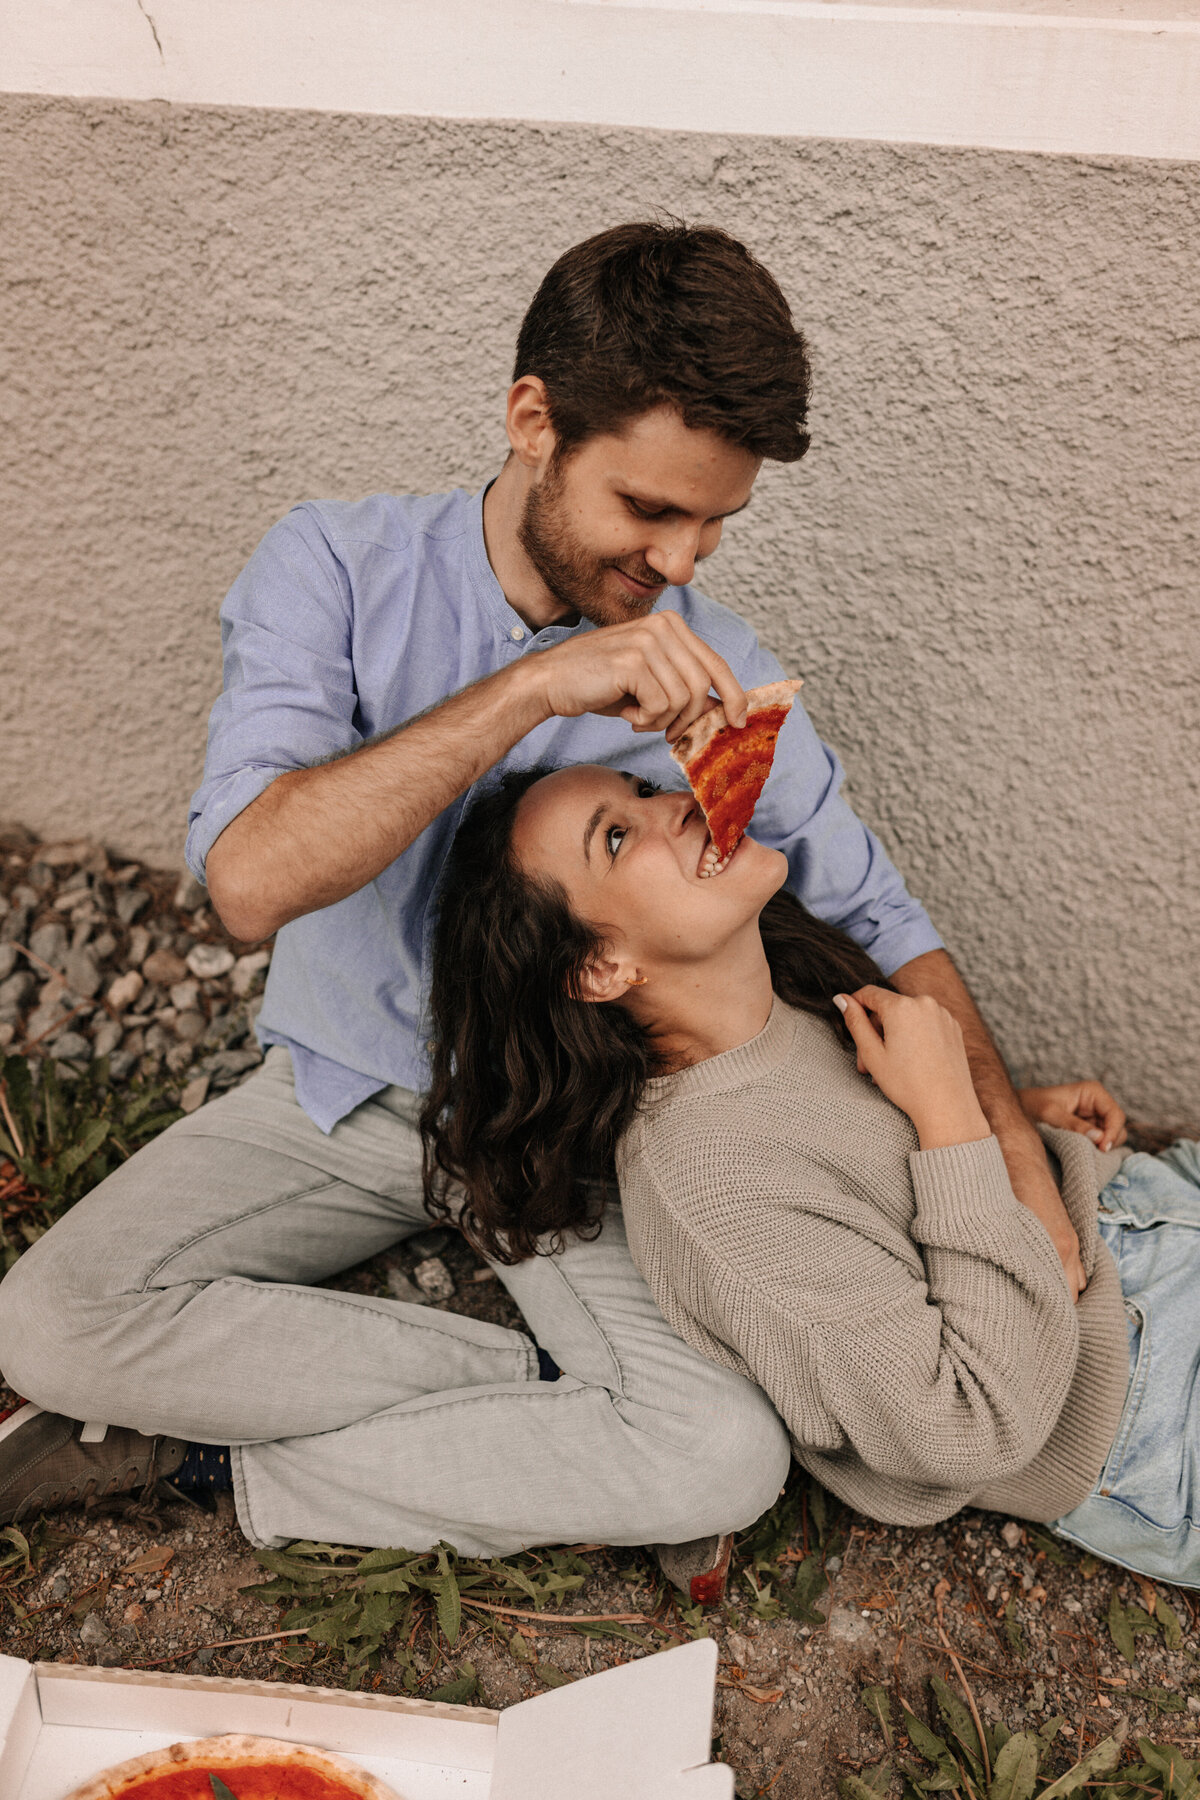 Brautpaar füttert sich gegenseitig mit Pizza